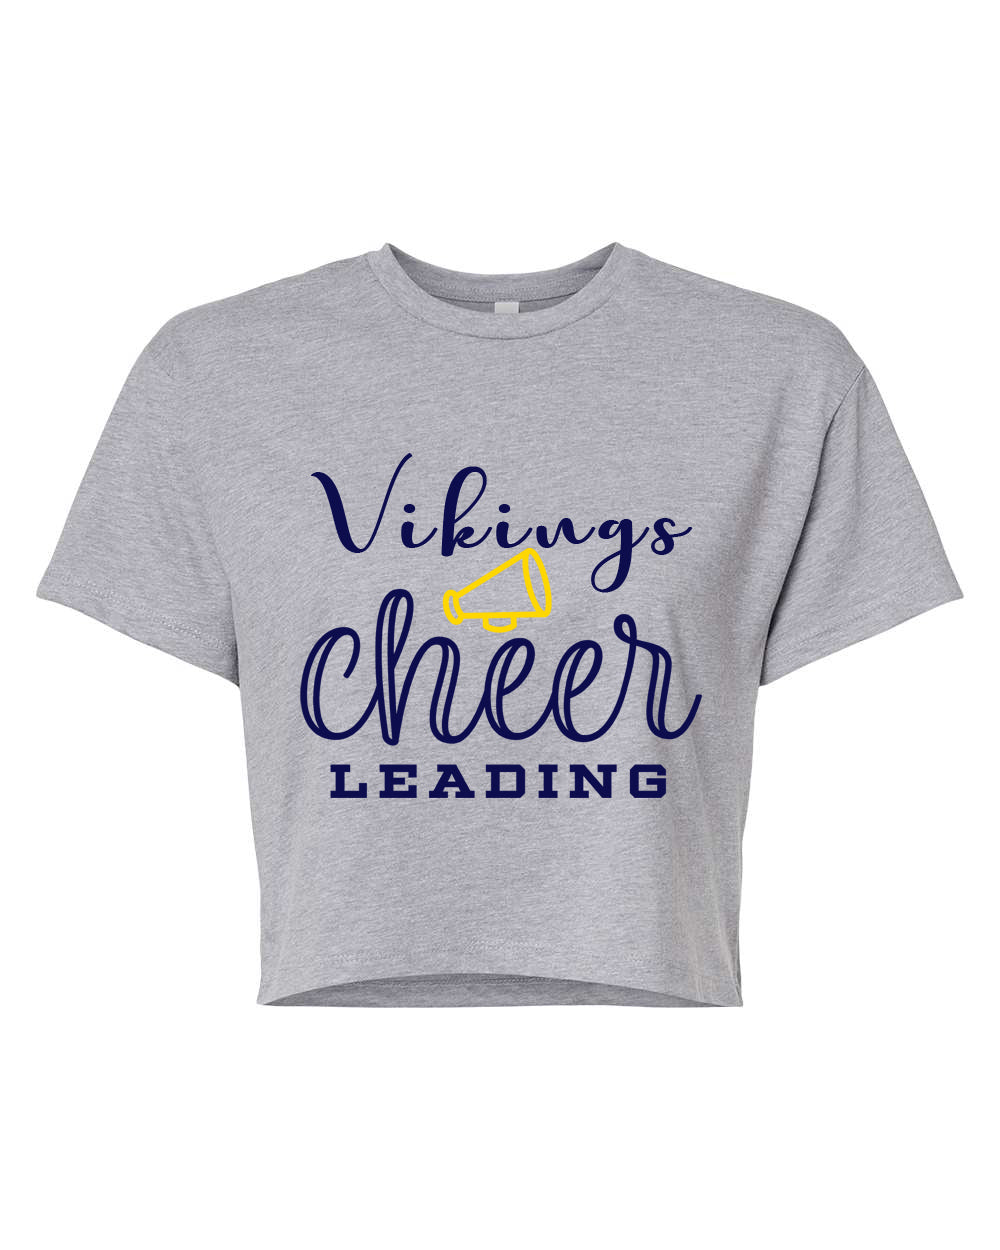 Vikings Cheer Design 4 Crop Top